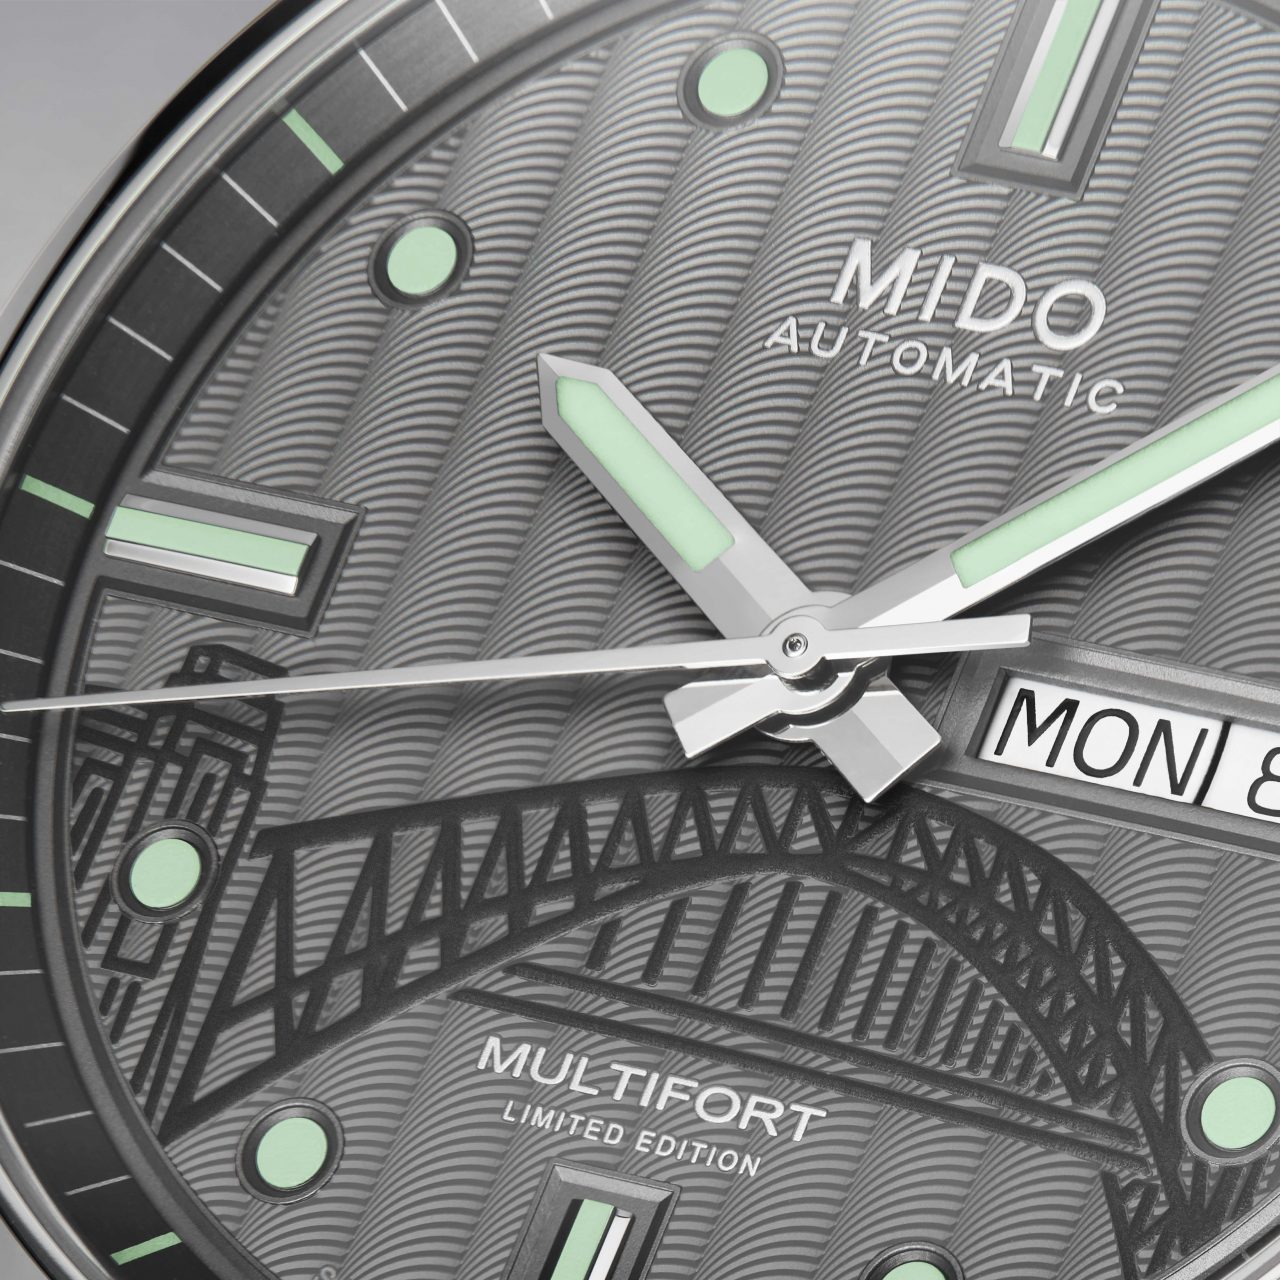 How To เลือกนาฬิกาผู้ชาย มัลติฟอร์ต นาฬิกา MIDO เพียง 1,932 เรือน!!